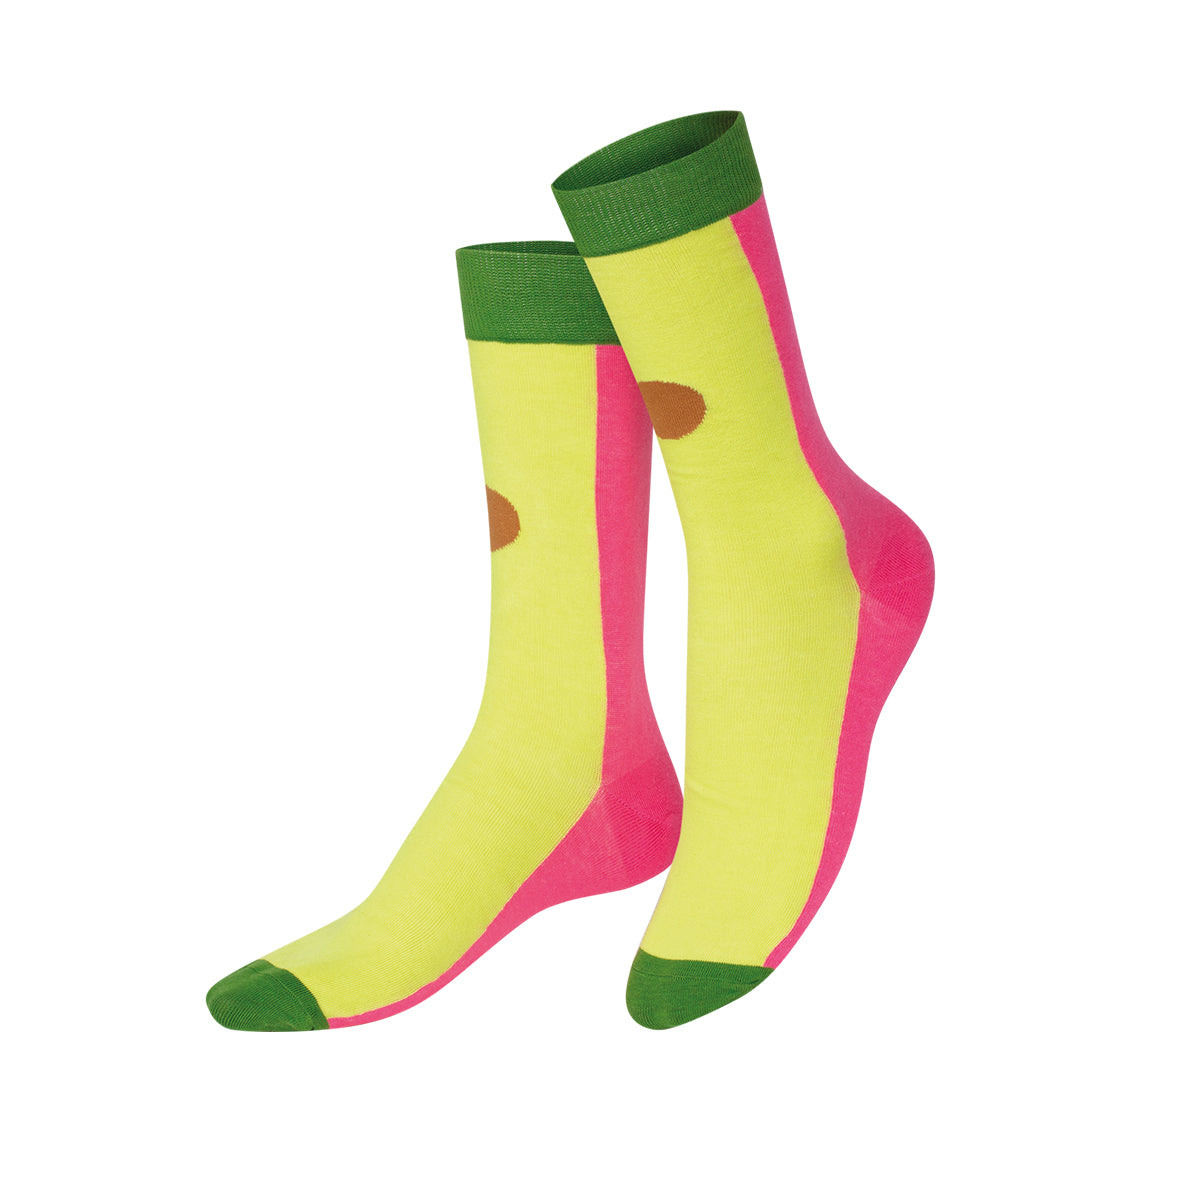 Socks Poke Bowl (2 pairs)